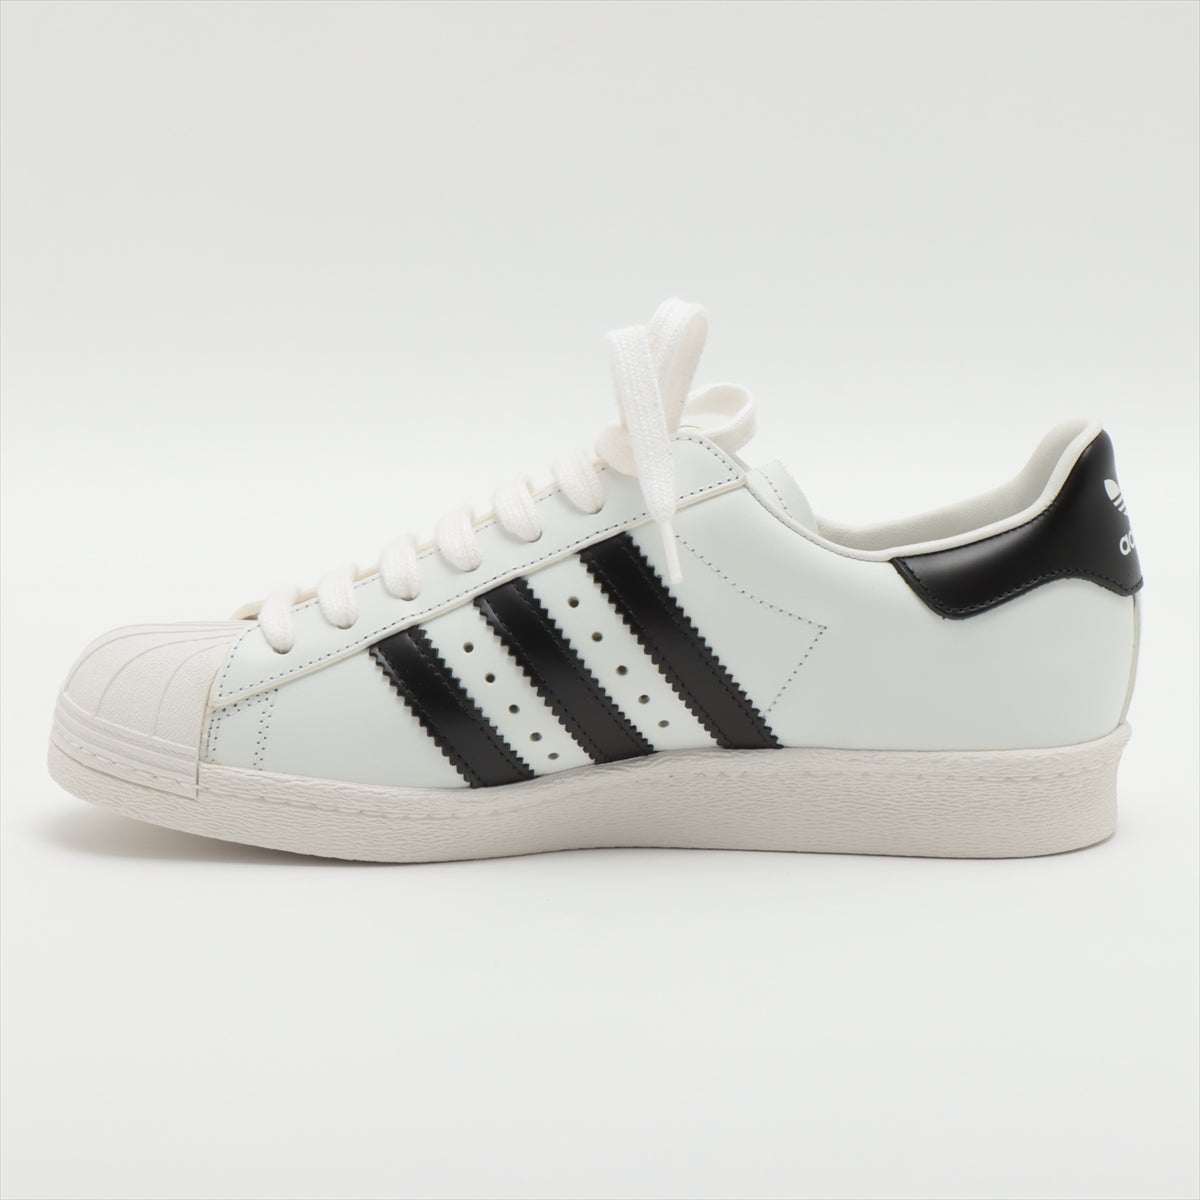 Prada x Adidas Leather Sneakers 24㎝ Ladies' Black × White 2EG321